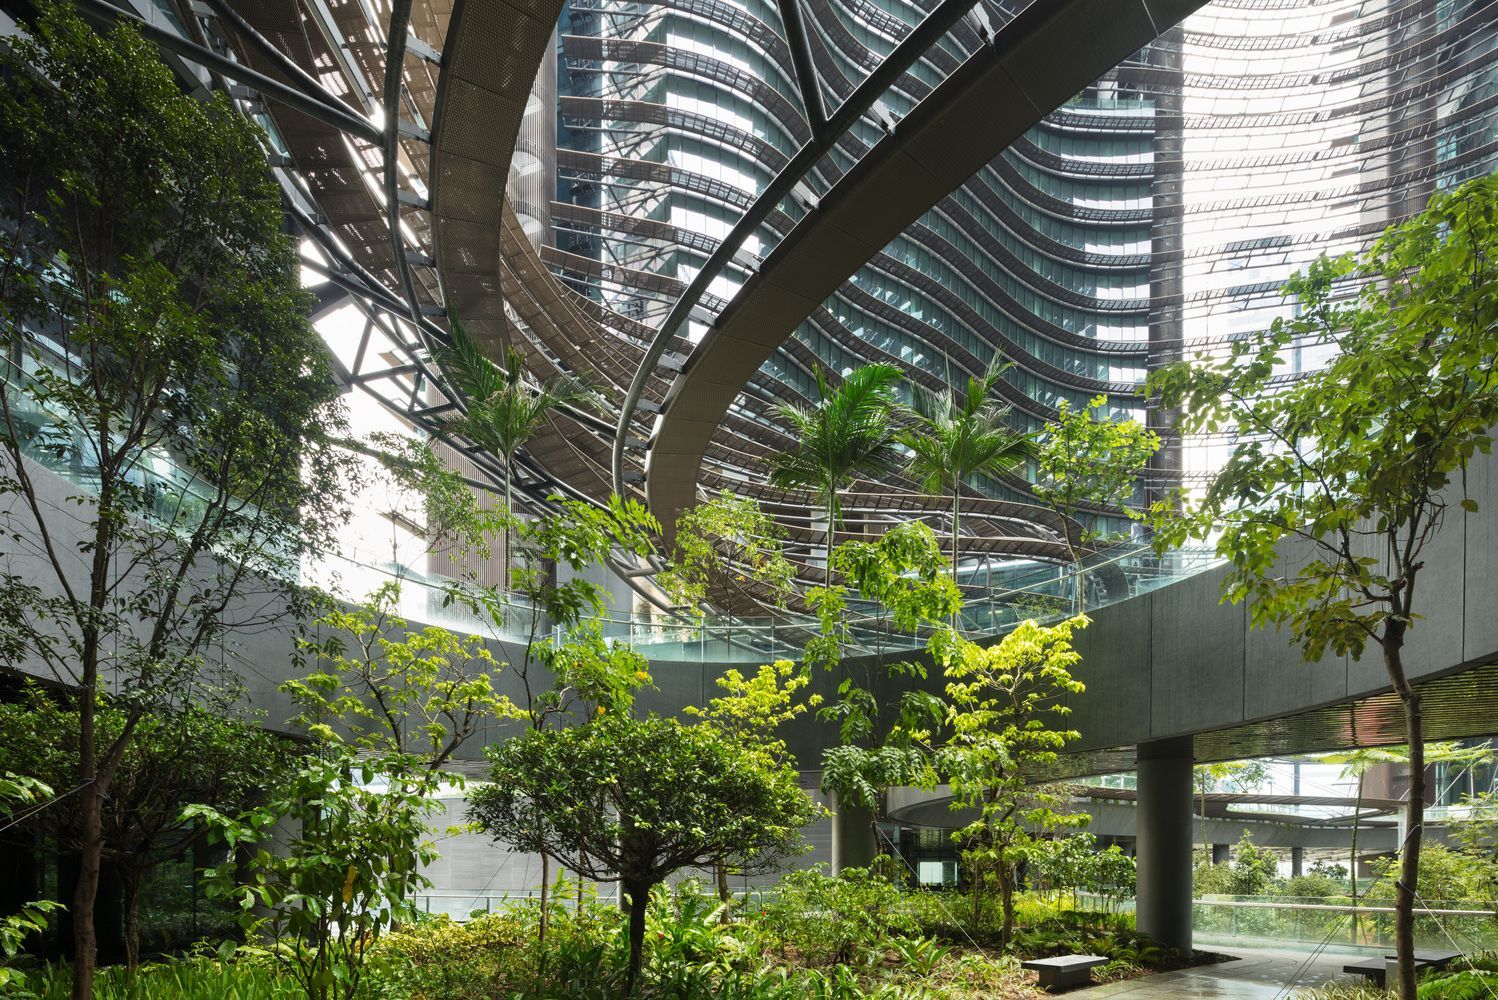 Зеленый оазис в многоэтажке: как выглядит комплекс будущего в Сингапуре 